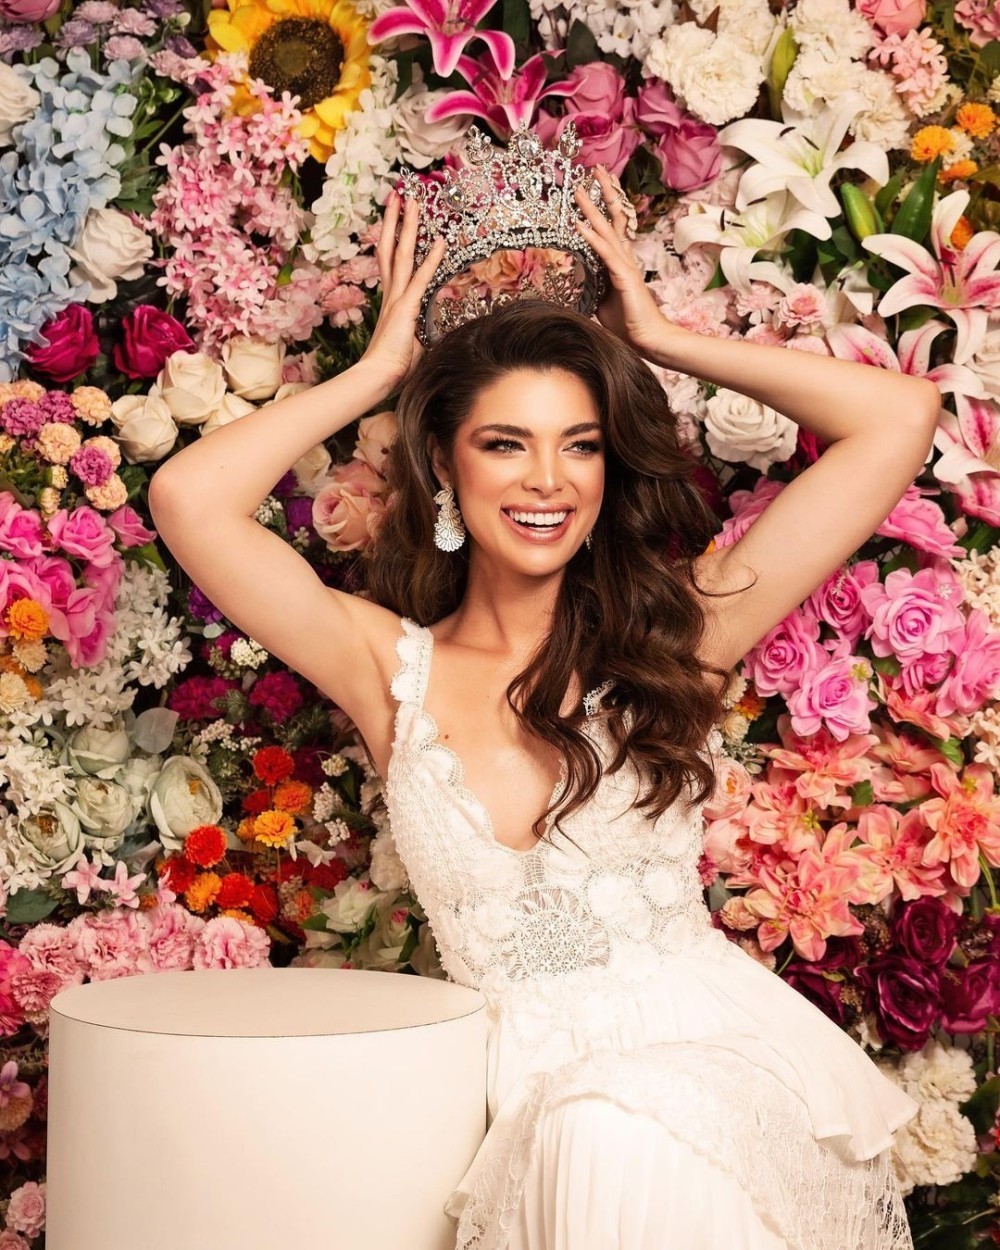 MissNews - Nadia Ferreira es Miss Universo en pleno Día de los Inocentes